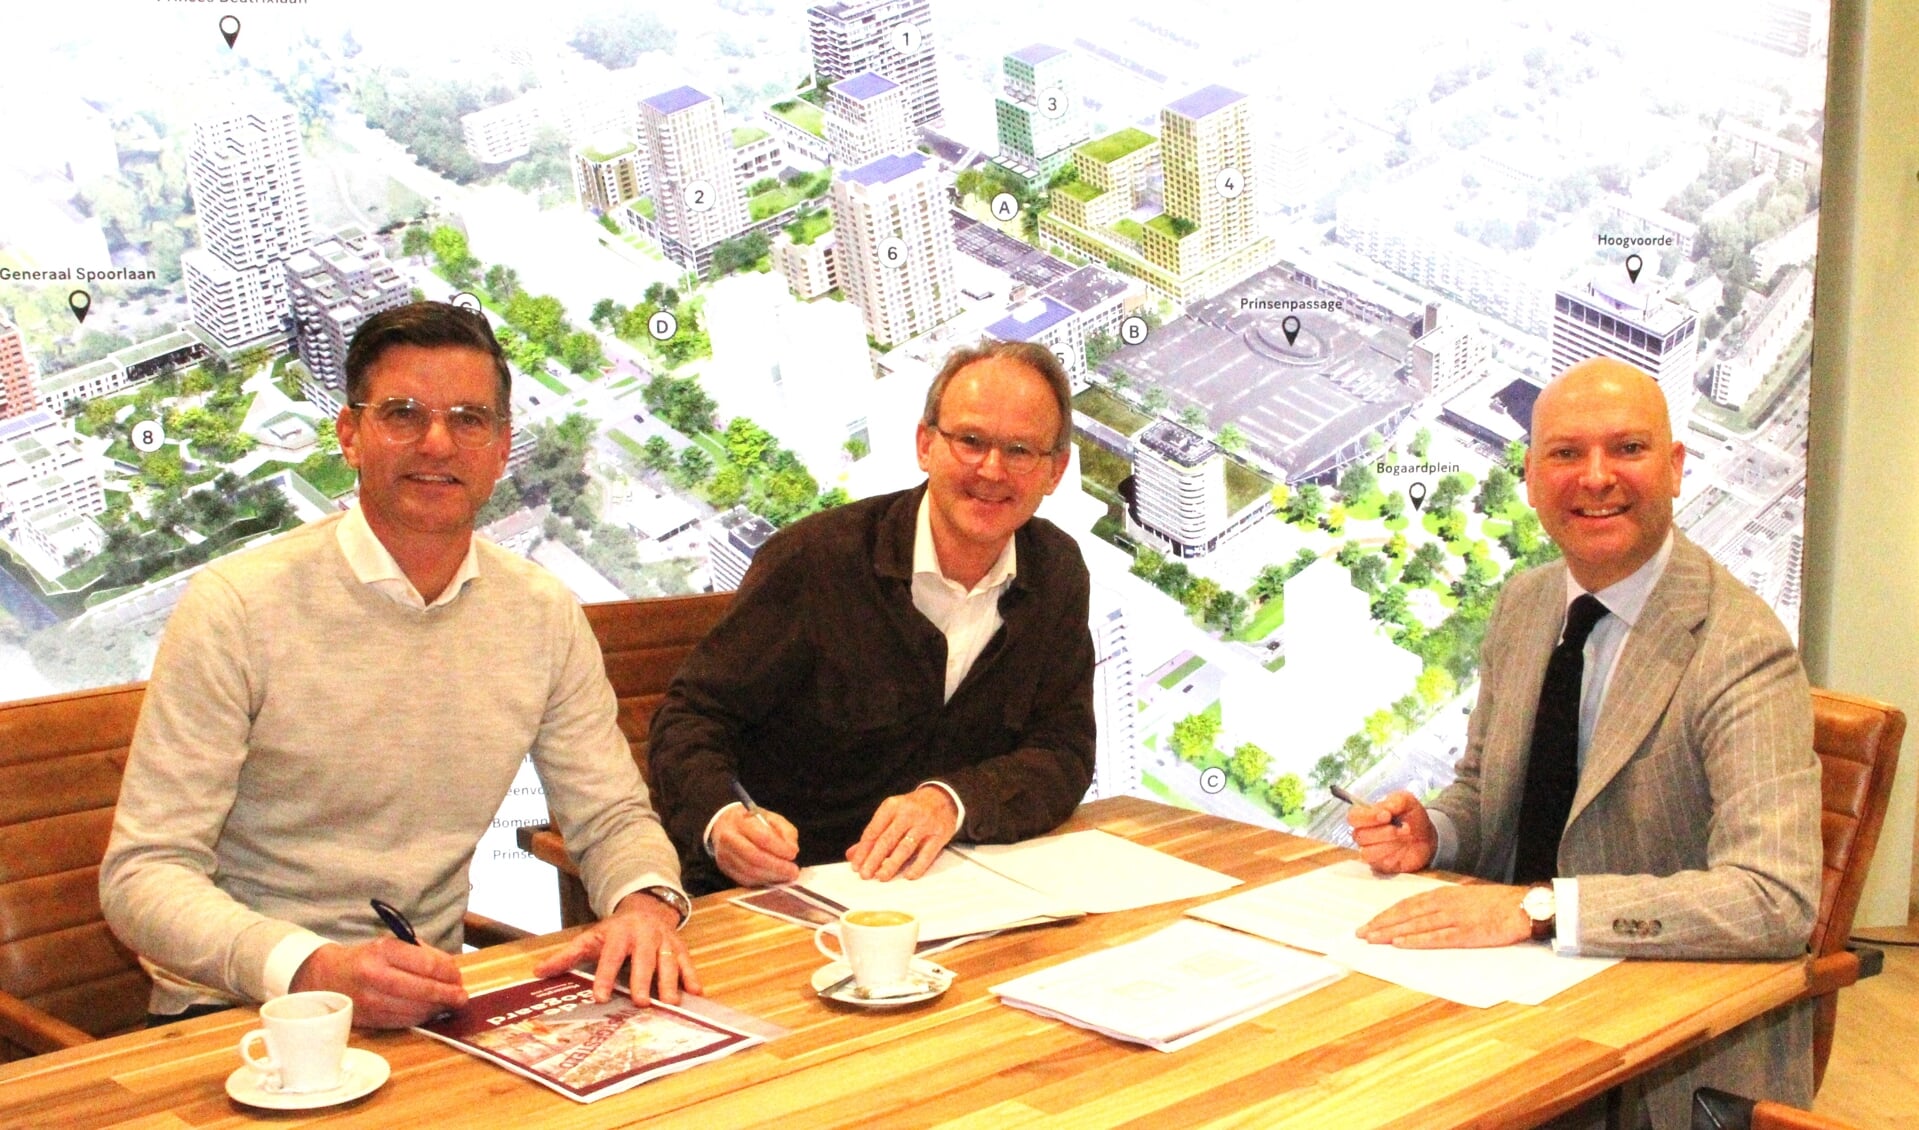 De intentieverklaring Prinsenpassage wordt getekend door Marcel Kokkeel, Heino Vink en Armand van de Laar.